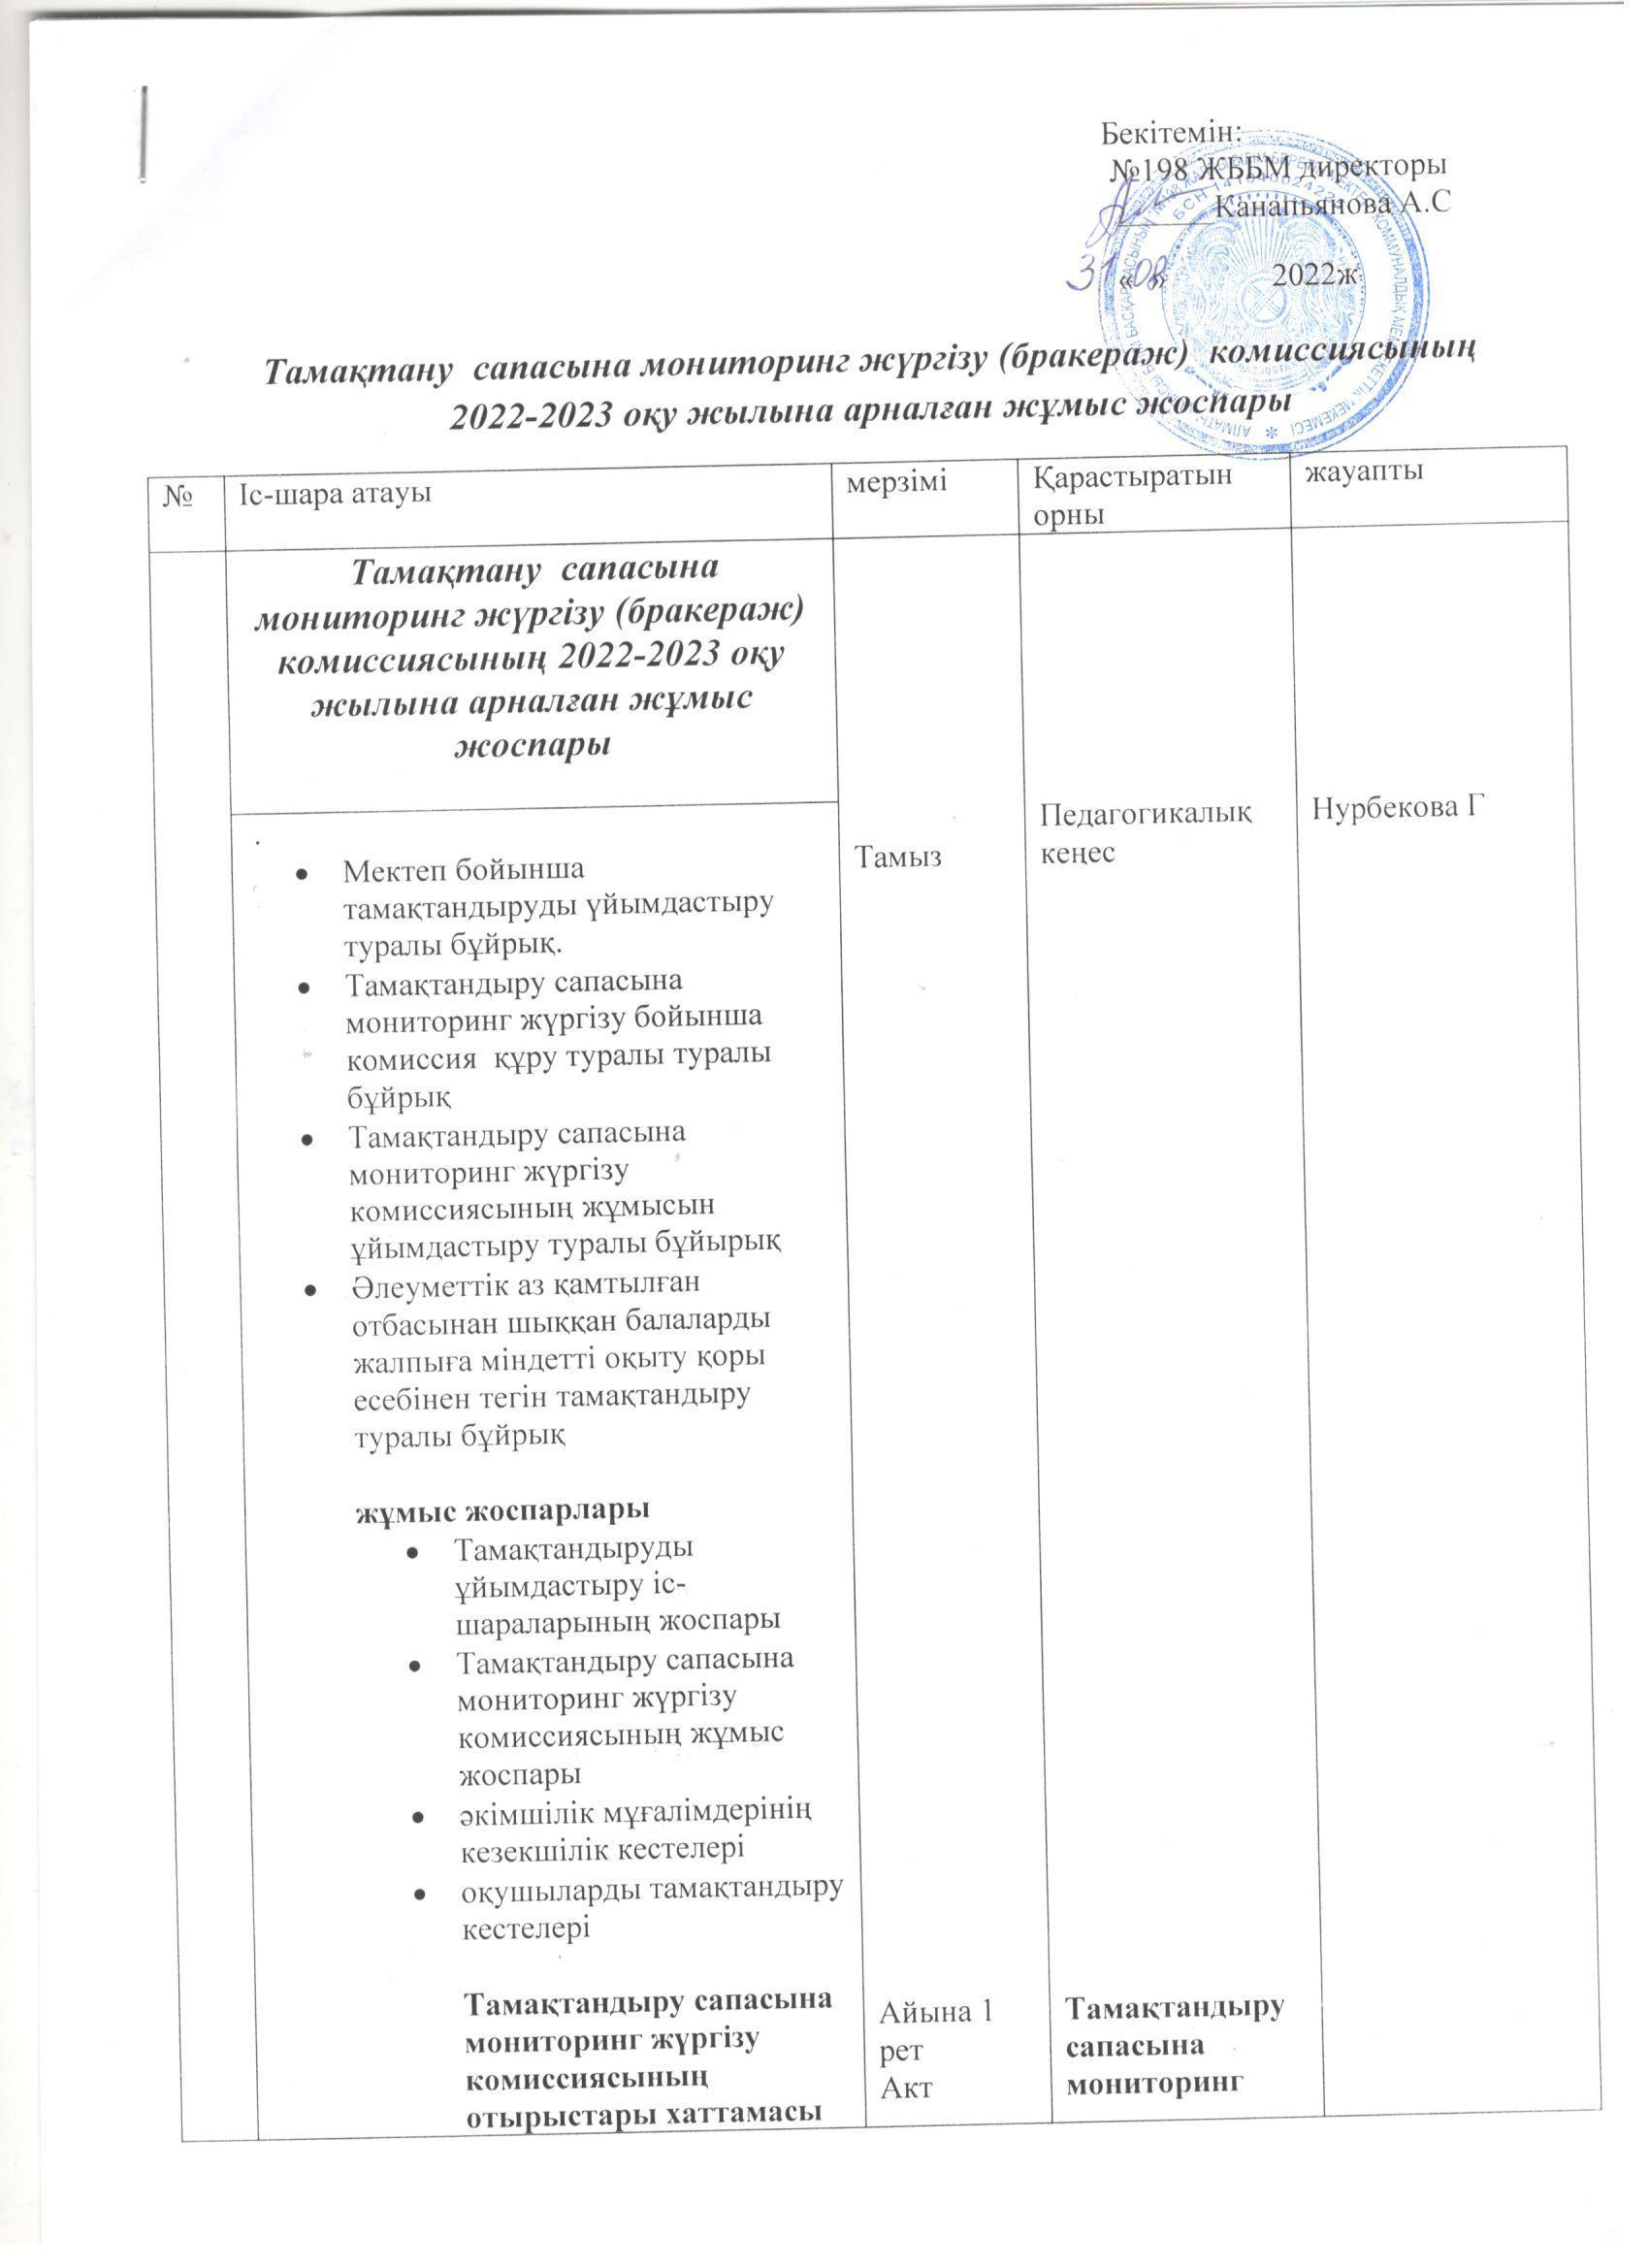 Тамақтану сапасының мониторинг жүргізу комиссиясының 2022-2023 оқу жылына арналған жұмыс жоспары